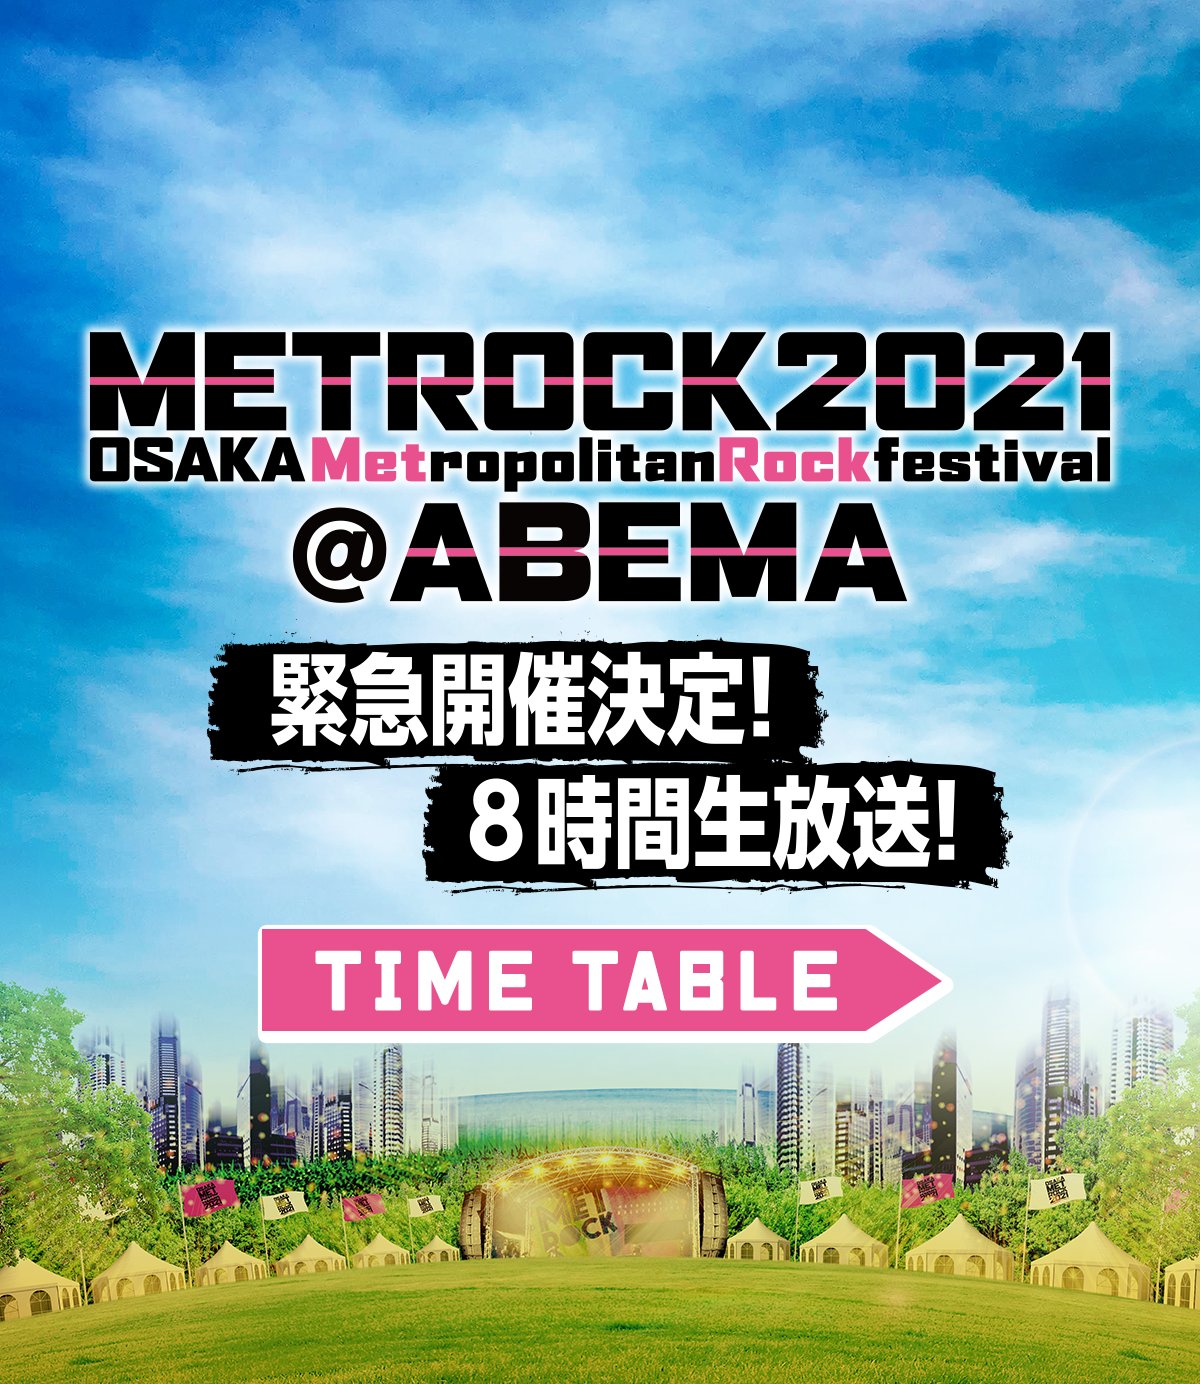 【明日 5月15日放送】メトロック2021@ABEMA”Keep on METROCK”8時間緊急生放送